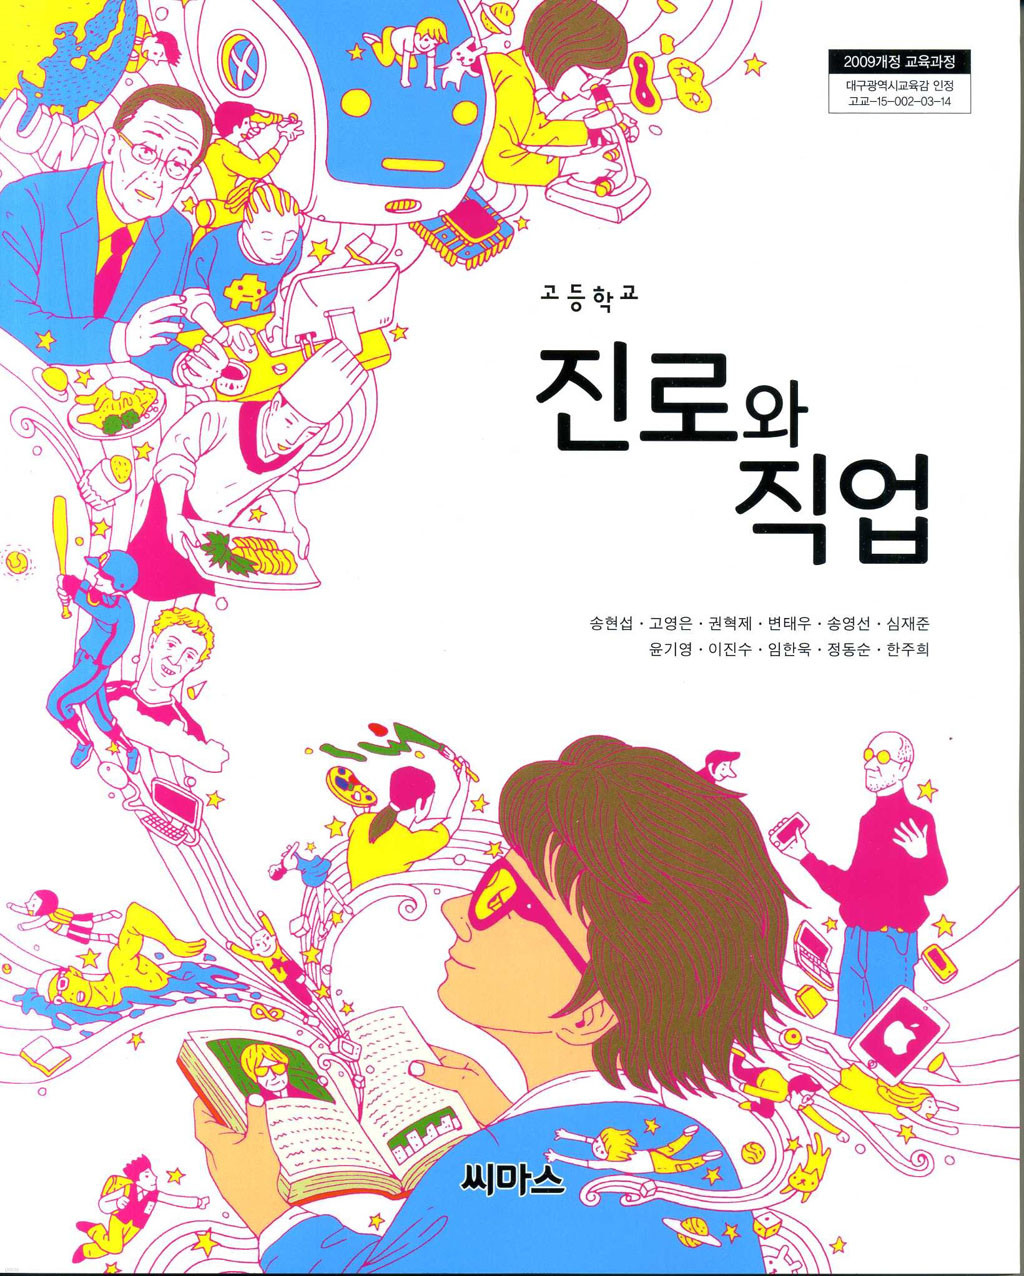 [교과서] 고등학교 진로와직업 교과서 씨마스/2013개정 새책수준